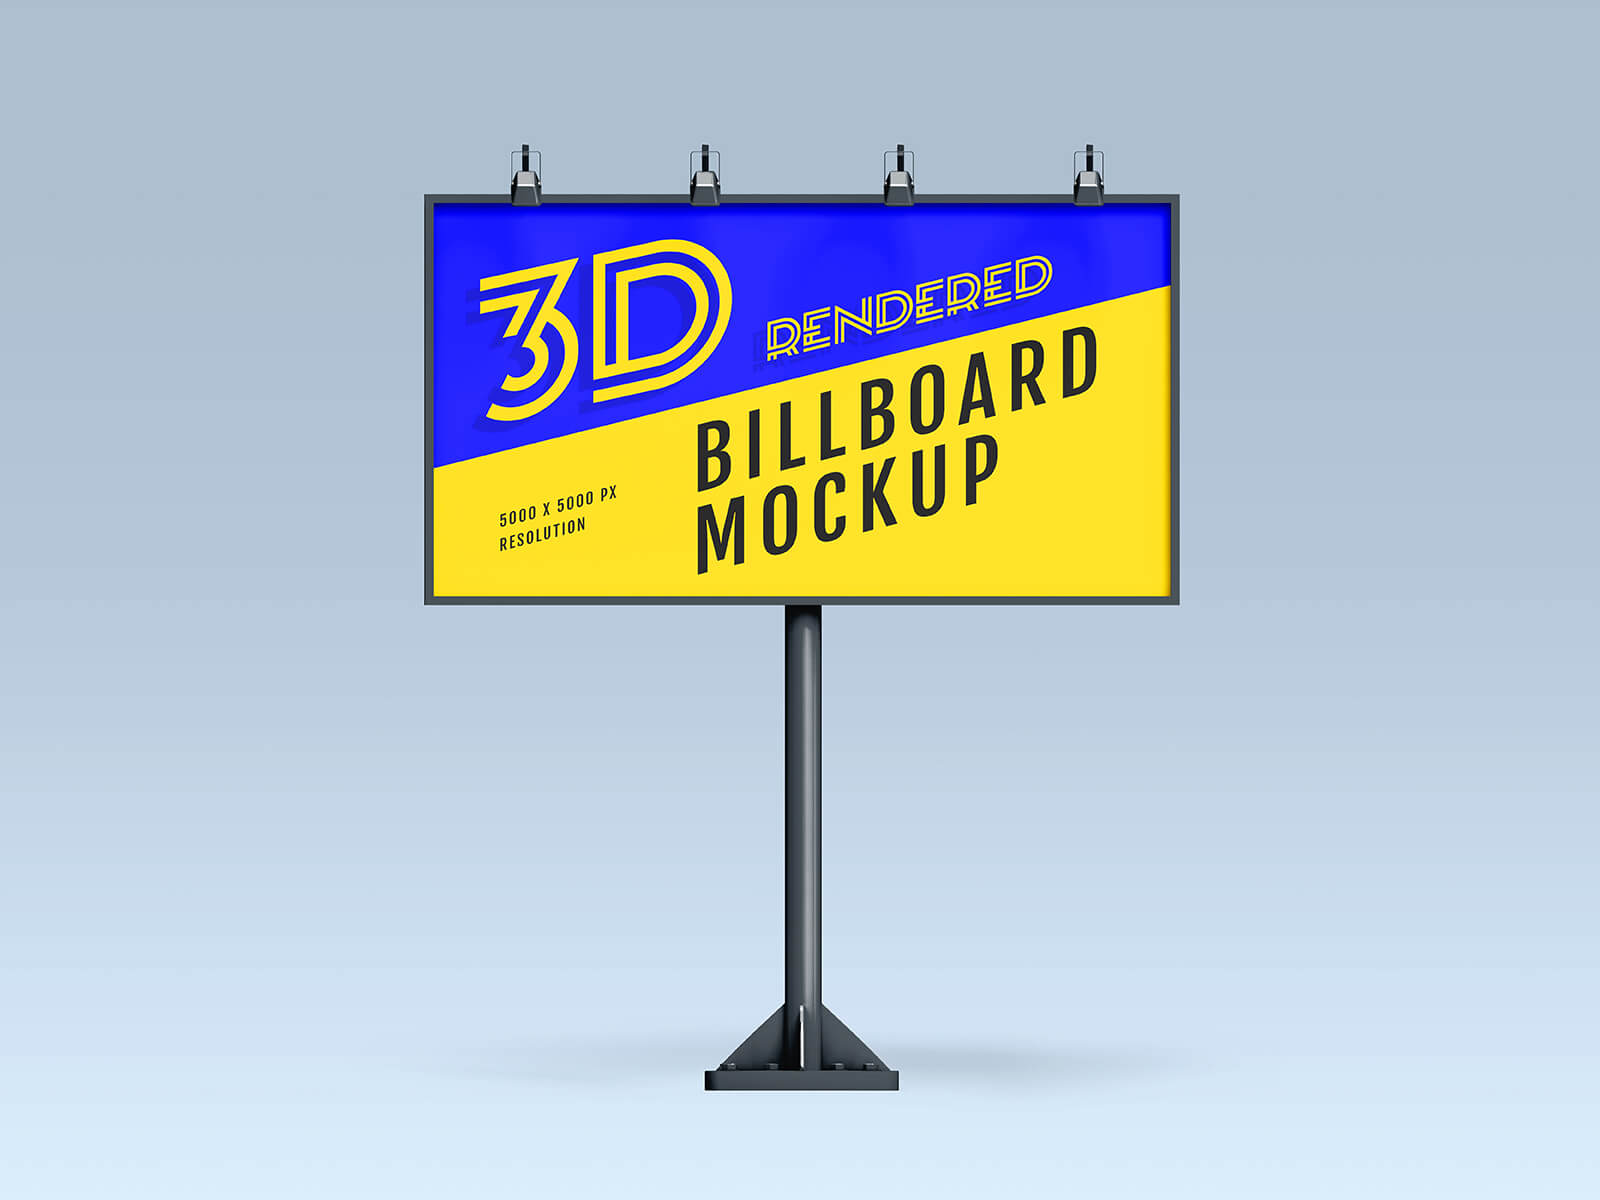 3 Free 3D Rendered Billboard Mockup PSD Files